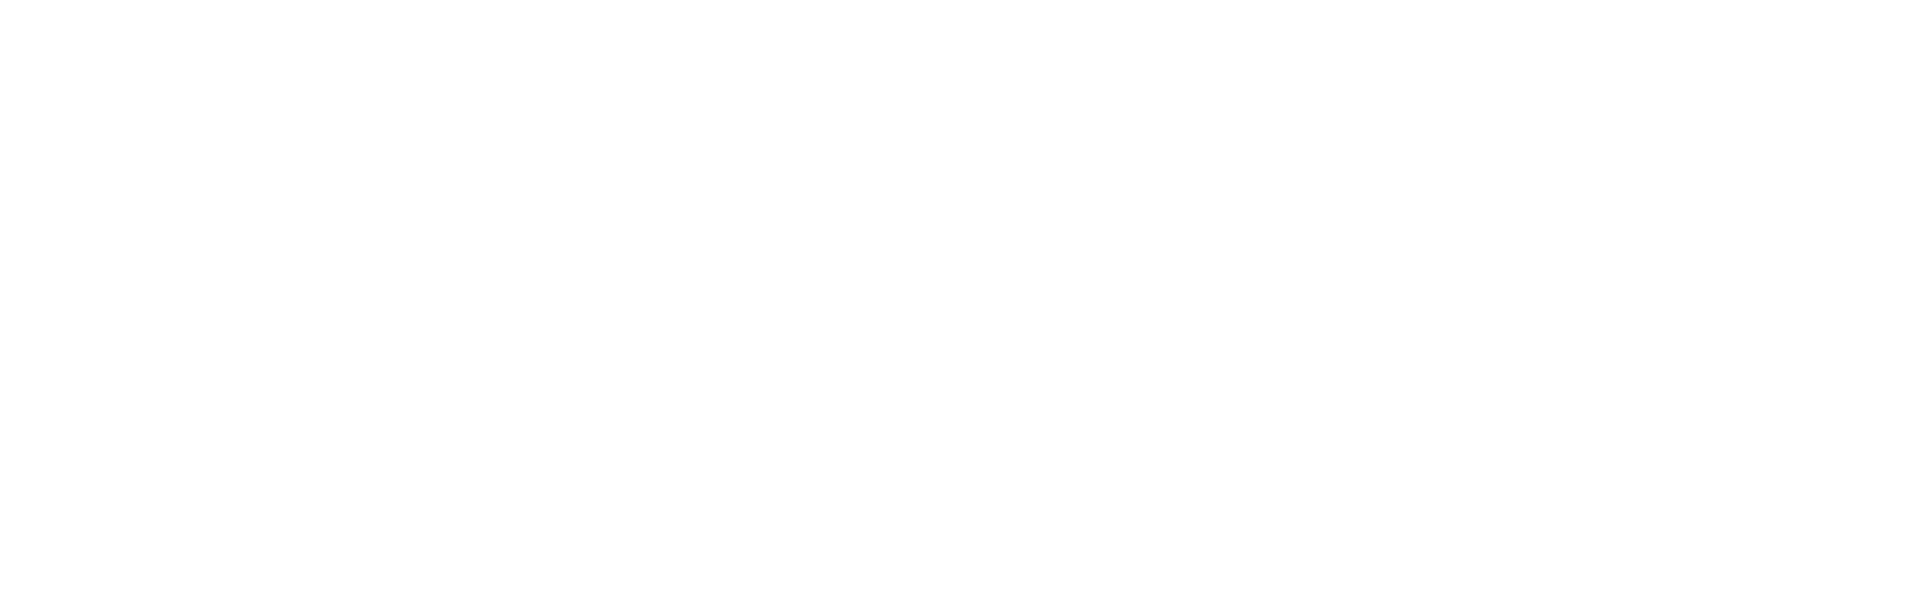 Delmar Mortgage White Logo